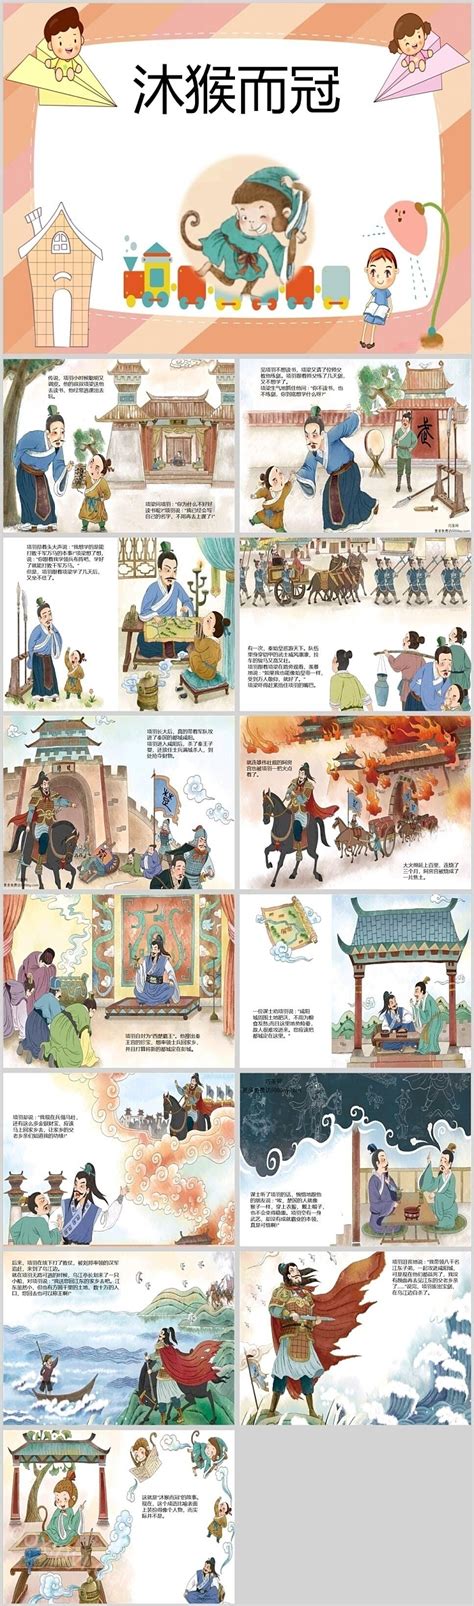 皇家之宠：任性与境界 | 中国国家地理网